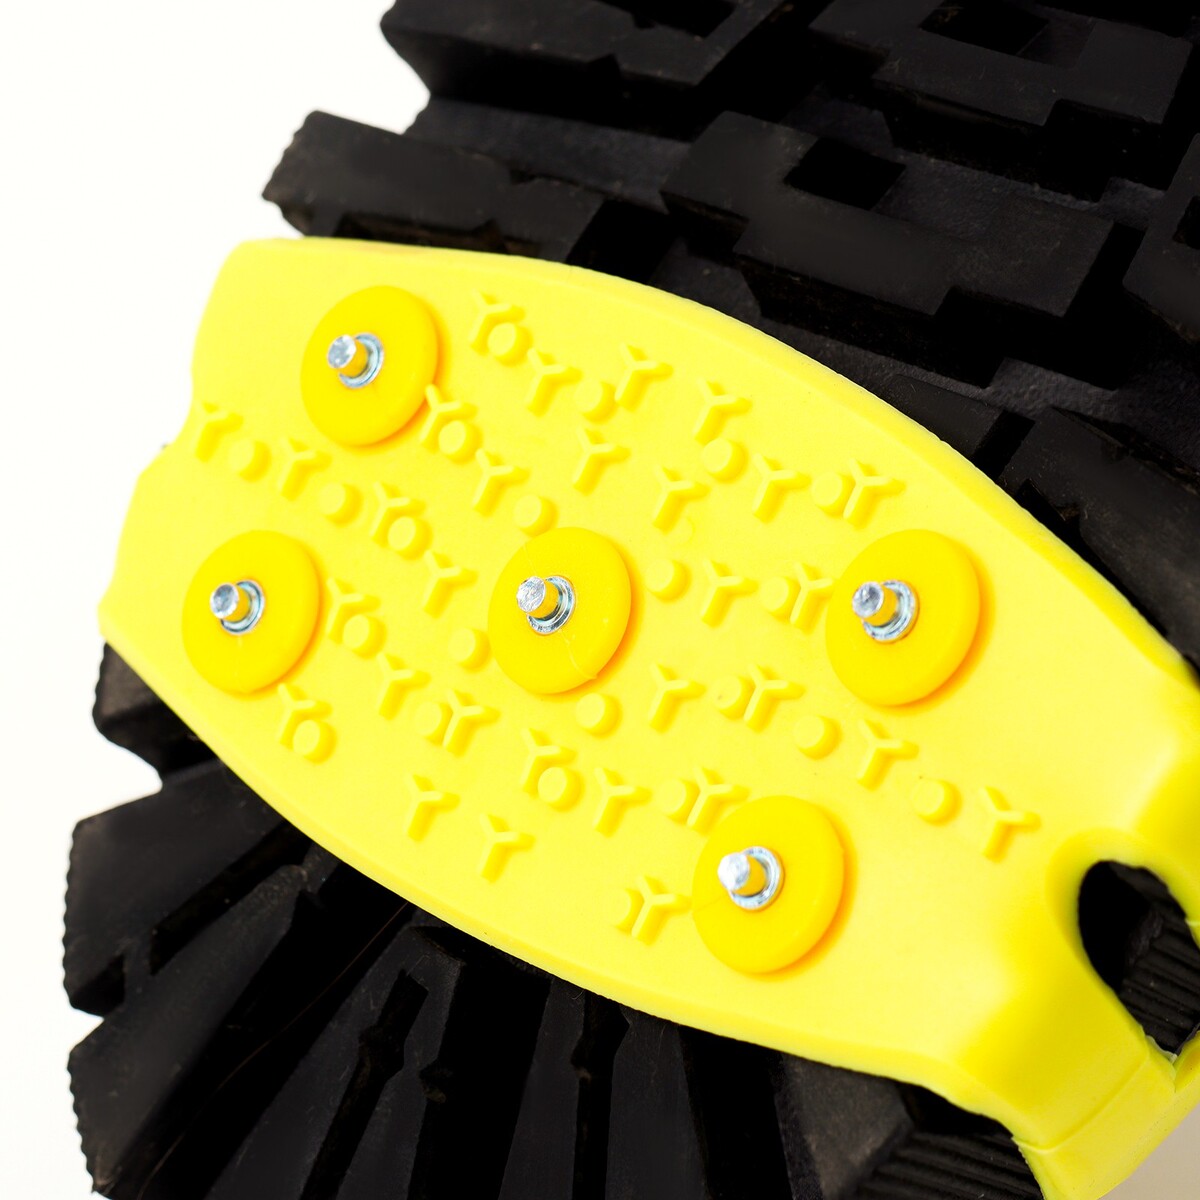 Шипы для обуви на толстой резине 5 шипов, универсальные, желтые No brand 05609999 - фото 3